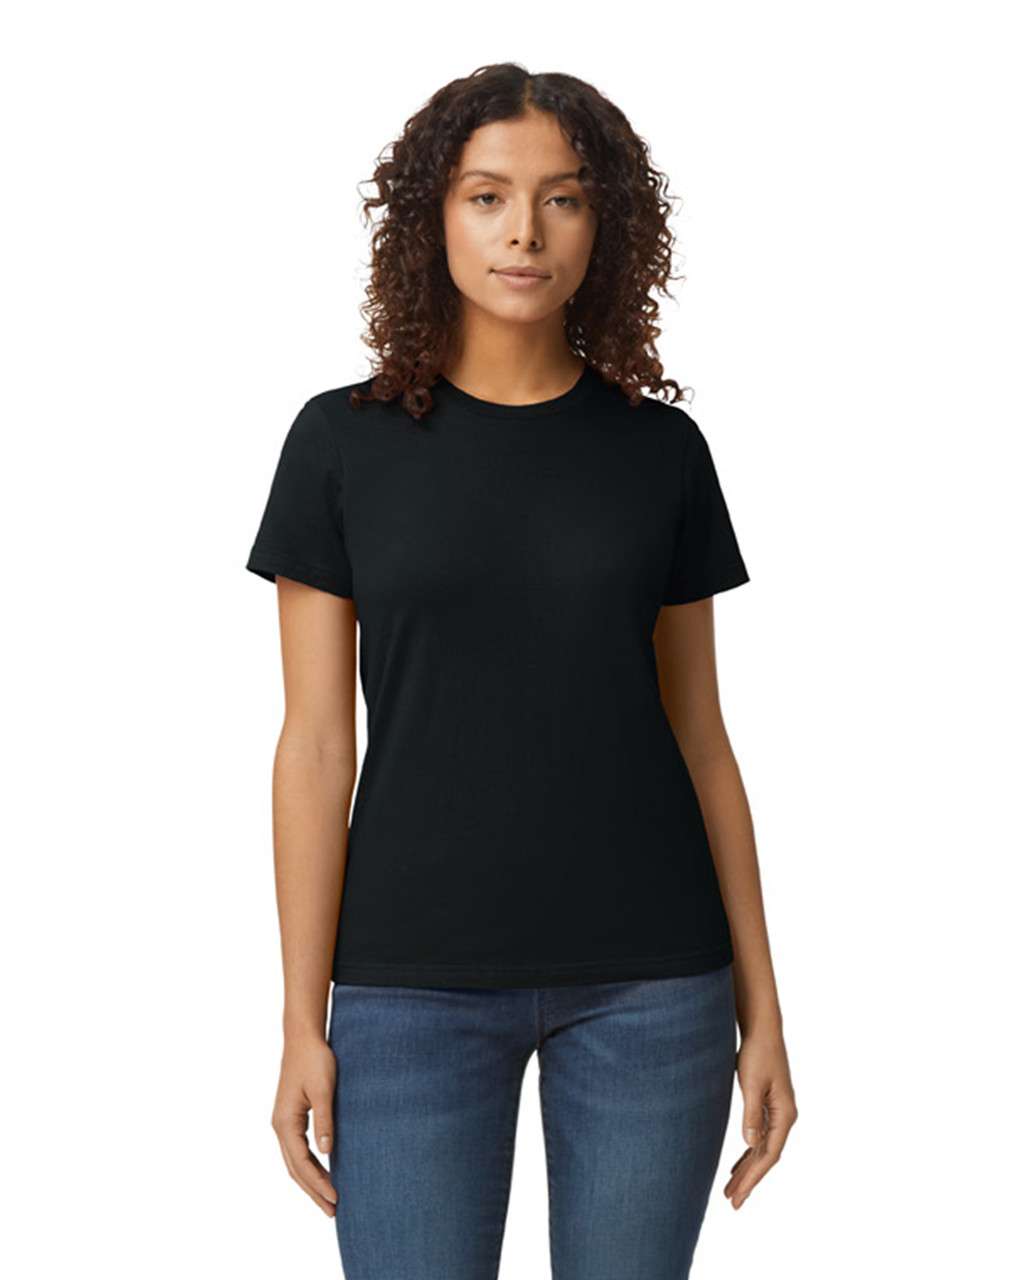 Gildan Softstyle® Midweight Women's T-shirt - schwarz